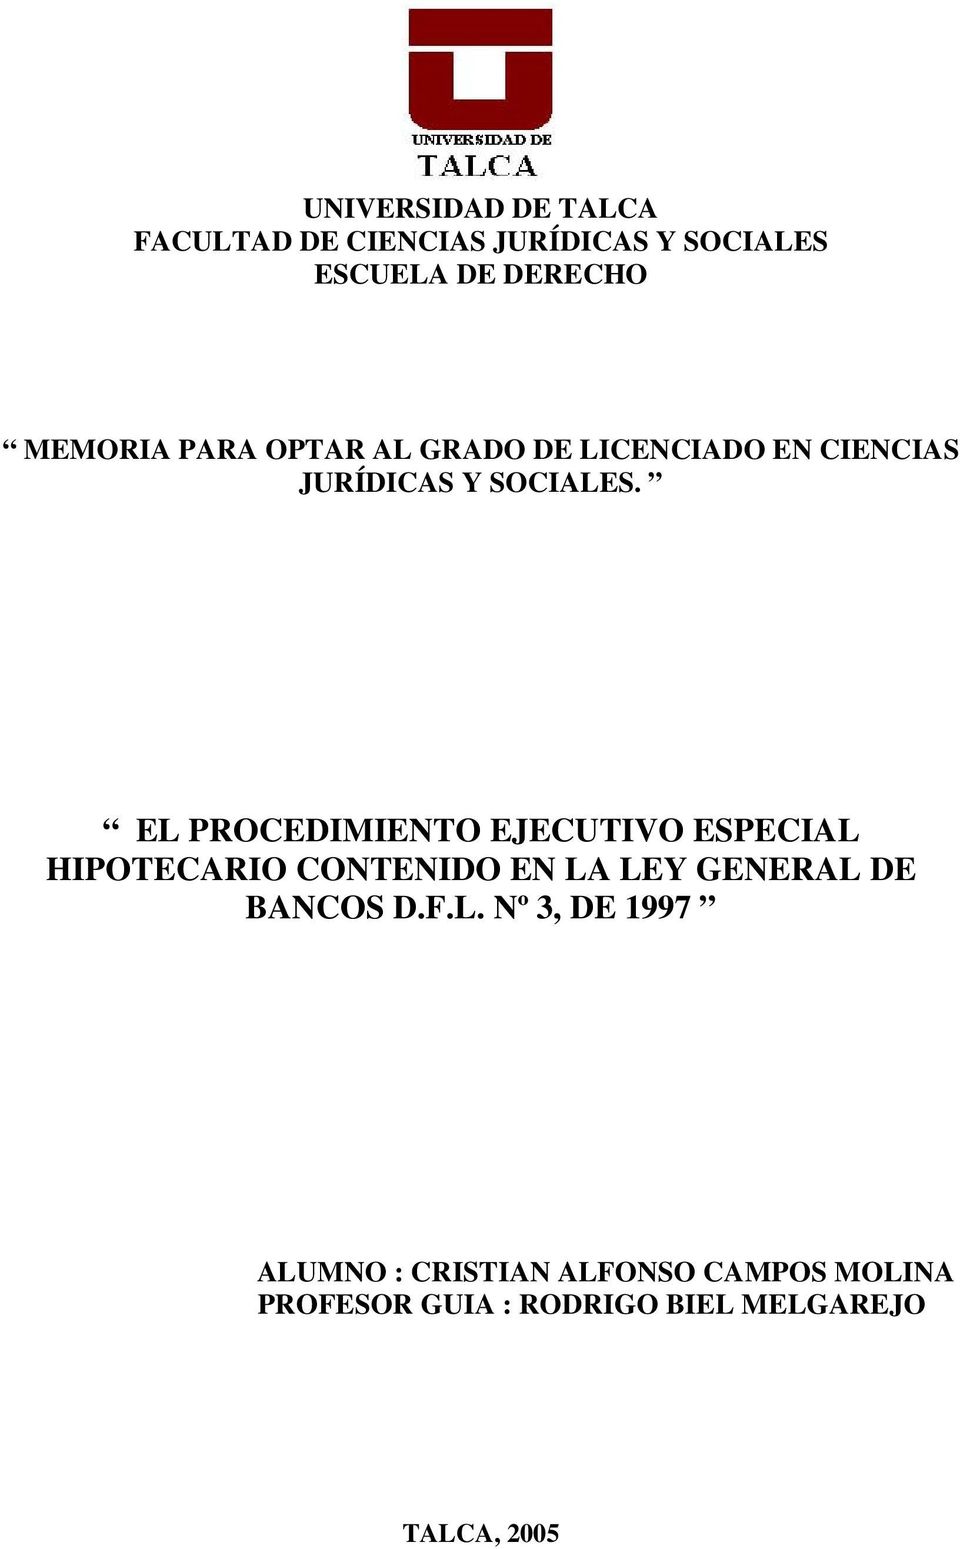 EL PROCEDIMIENTO EJECUTIVO ESPECIAL HIPOTECARIO CONTENIDO EN LA LEY GENERAL DE BANCOS D.